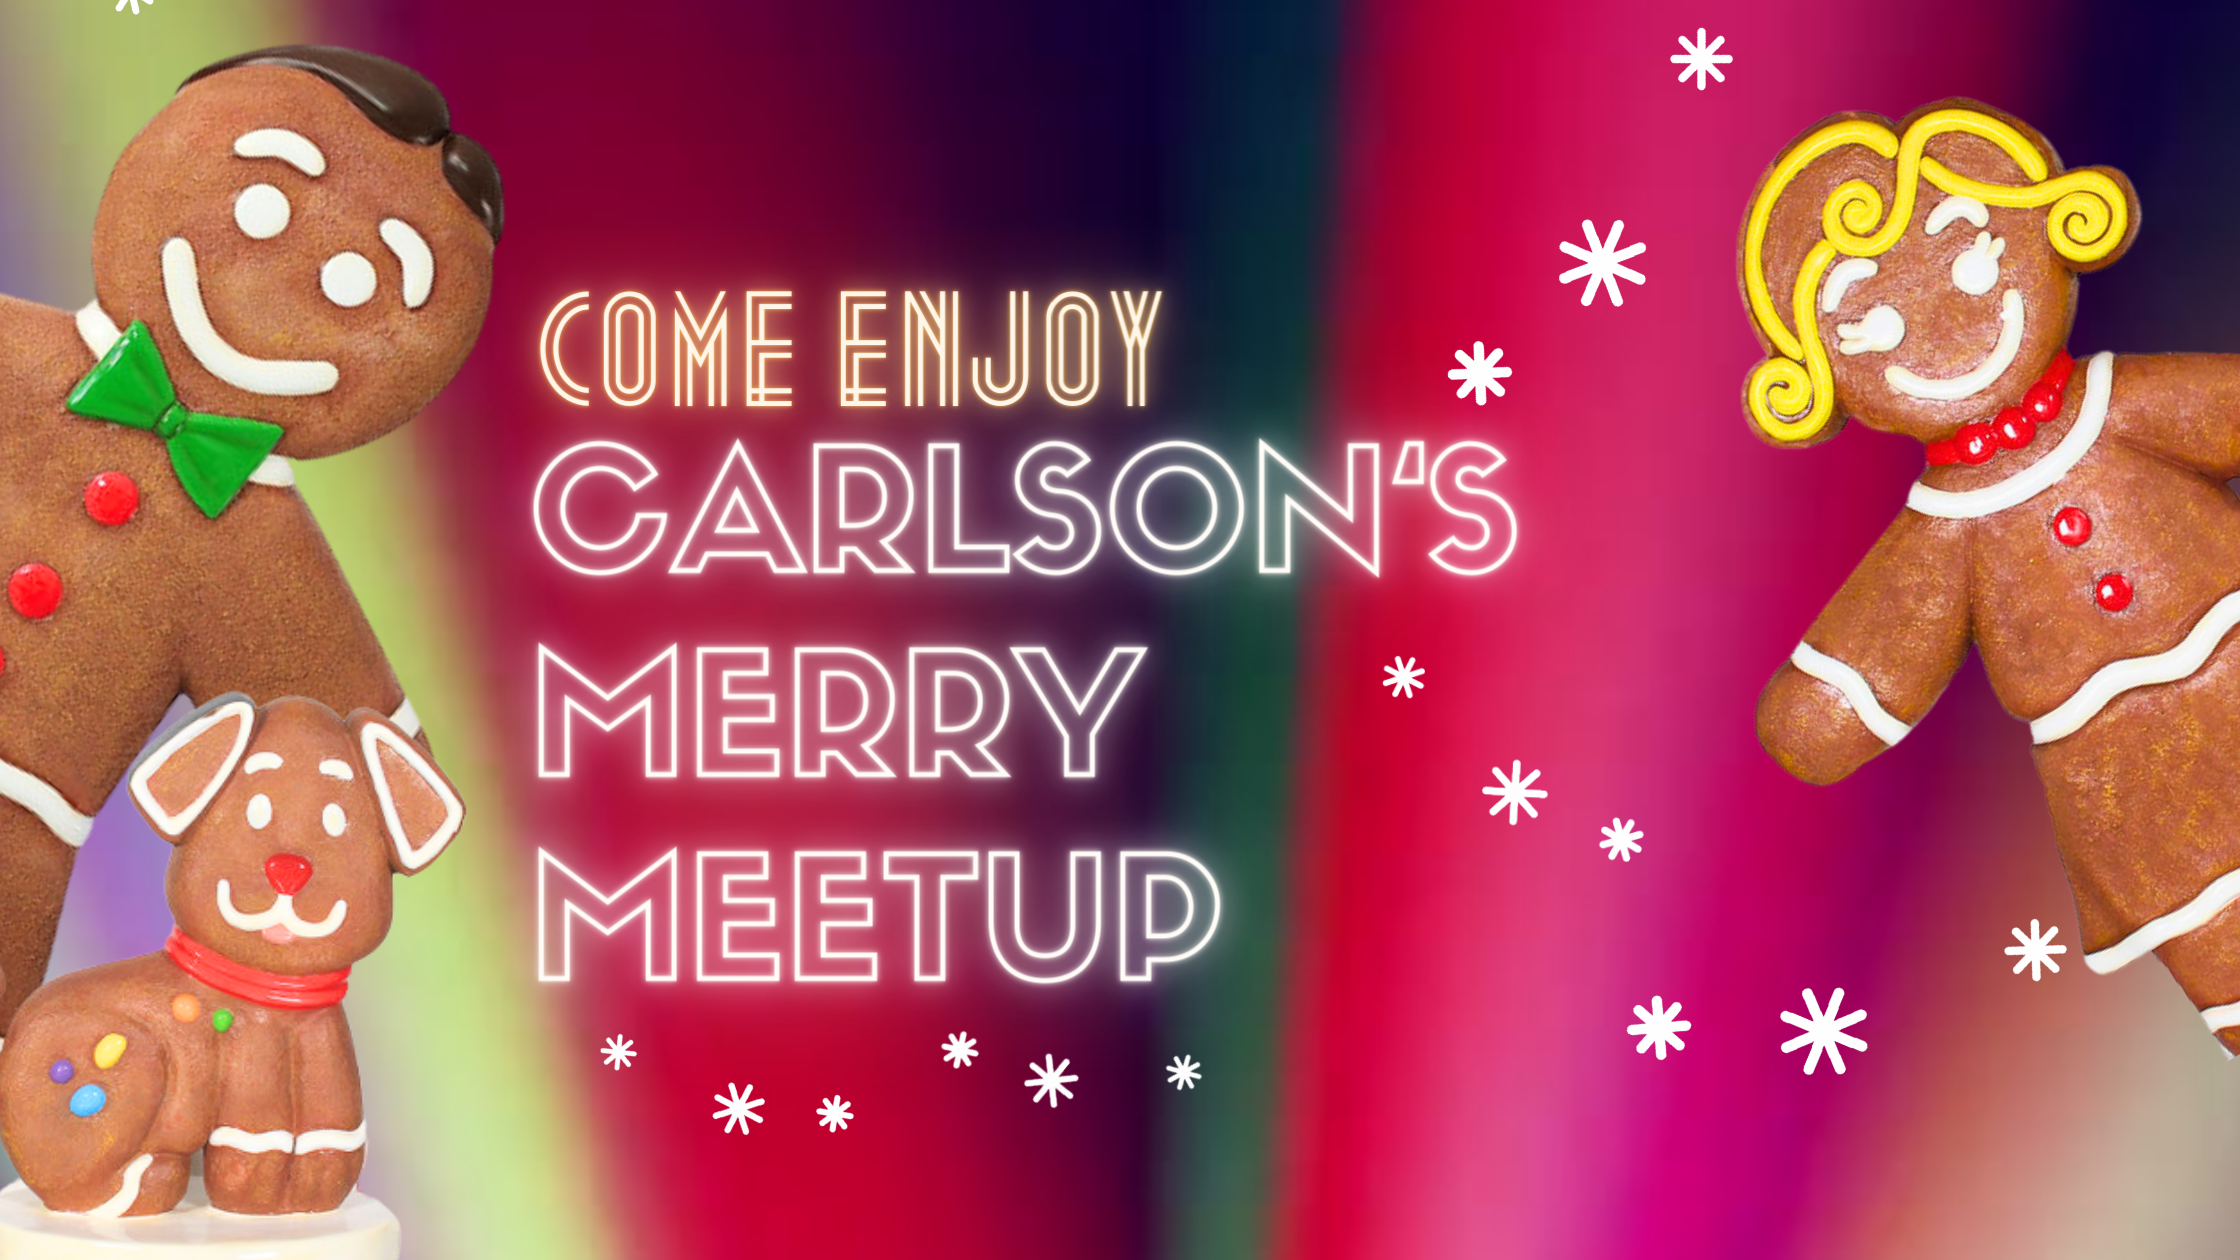 Carlson's Merry Meet Up